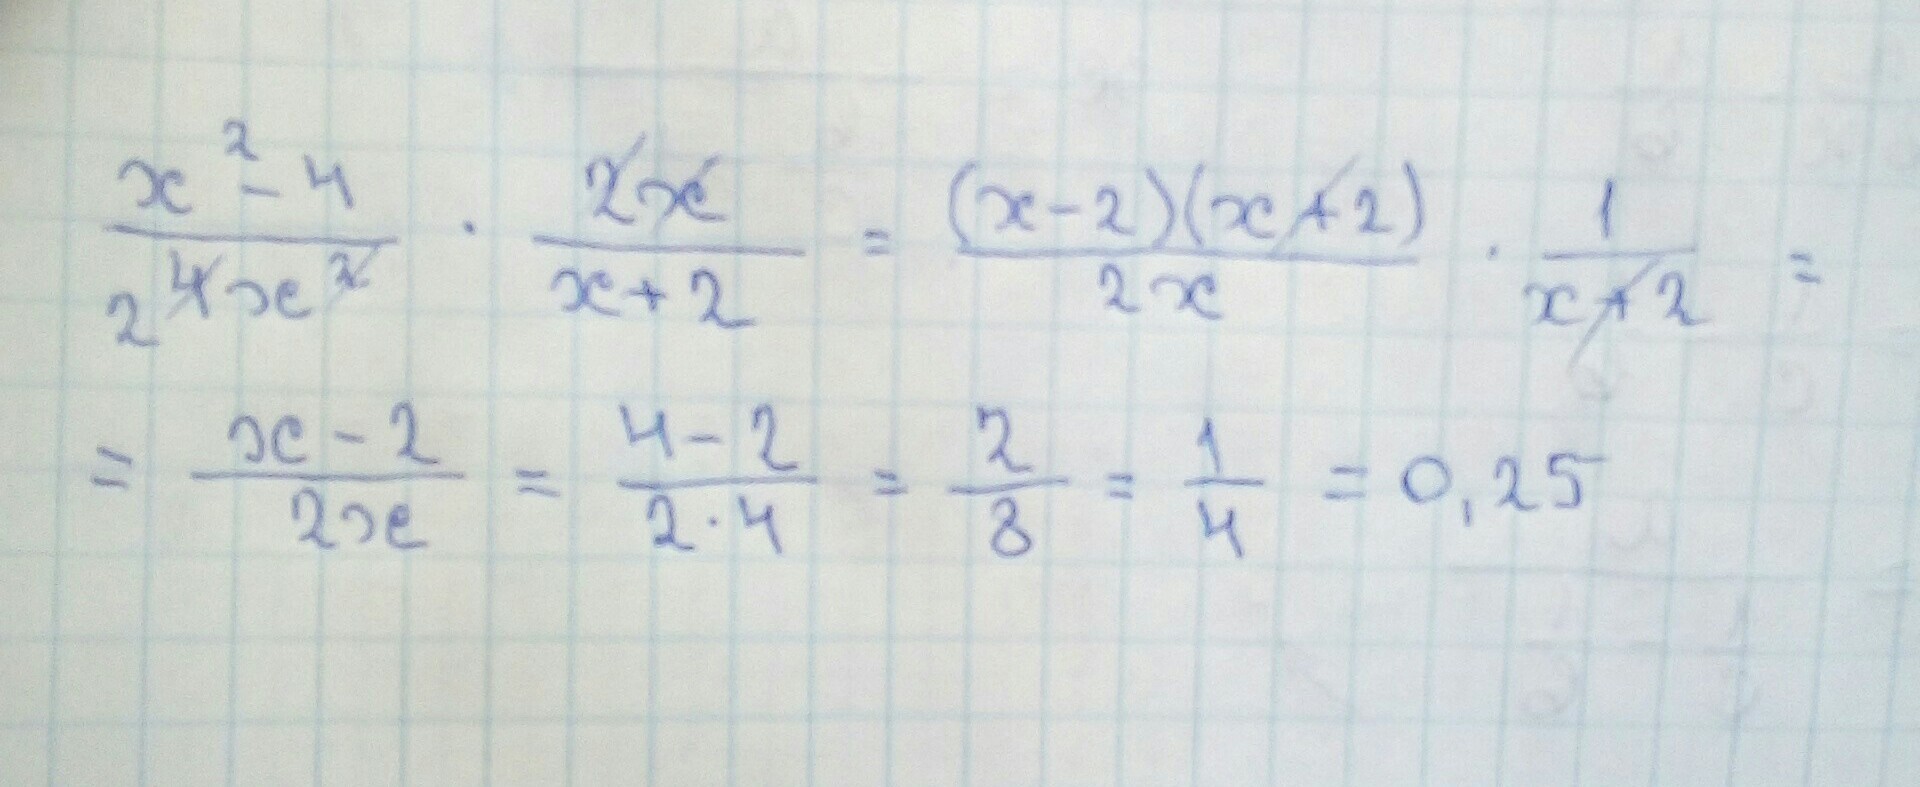 4x 2 2х 1 1 2х. Упростите выражение х2-4/4х2 2х/х+2. Упростите выражение х2-4/4х2 2х/х+2 при х 4. Х²-4:4х² ×2х :х+2 х=4. Упростите выражение 2 /х-4 -х+8/х2-16-1/х.